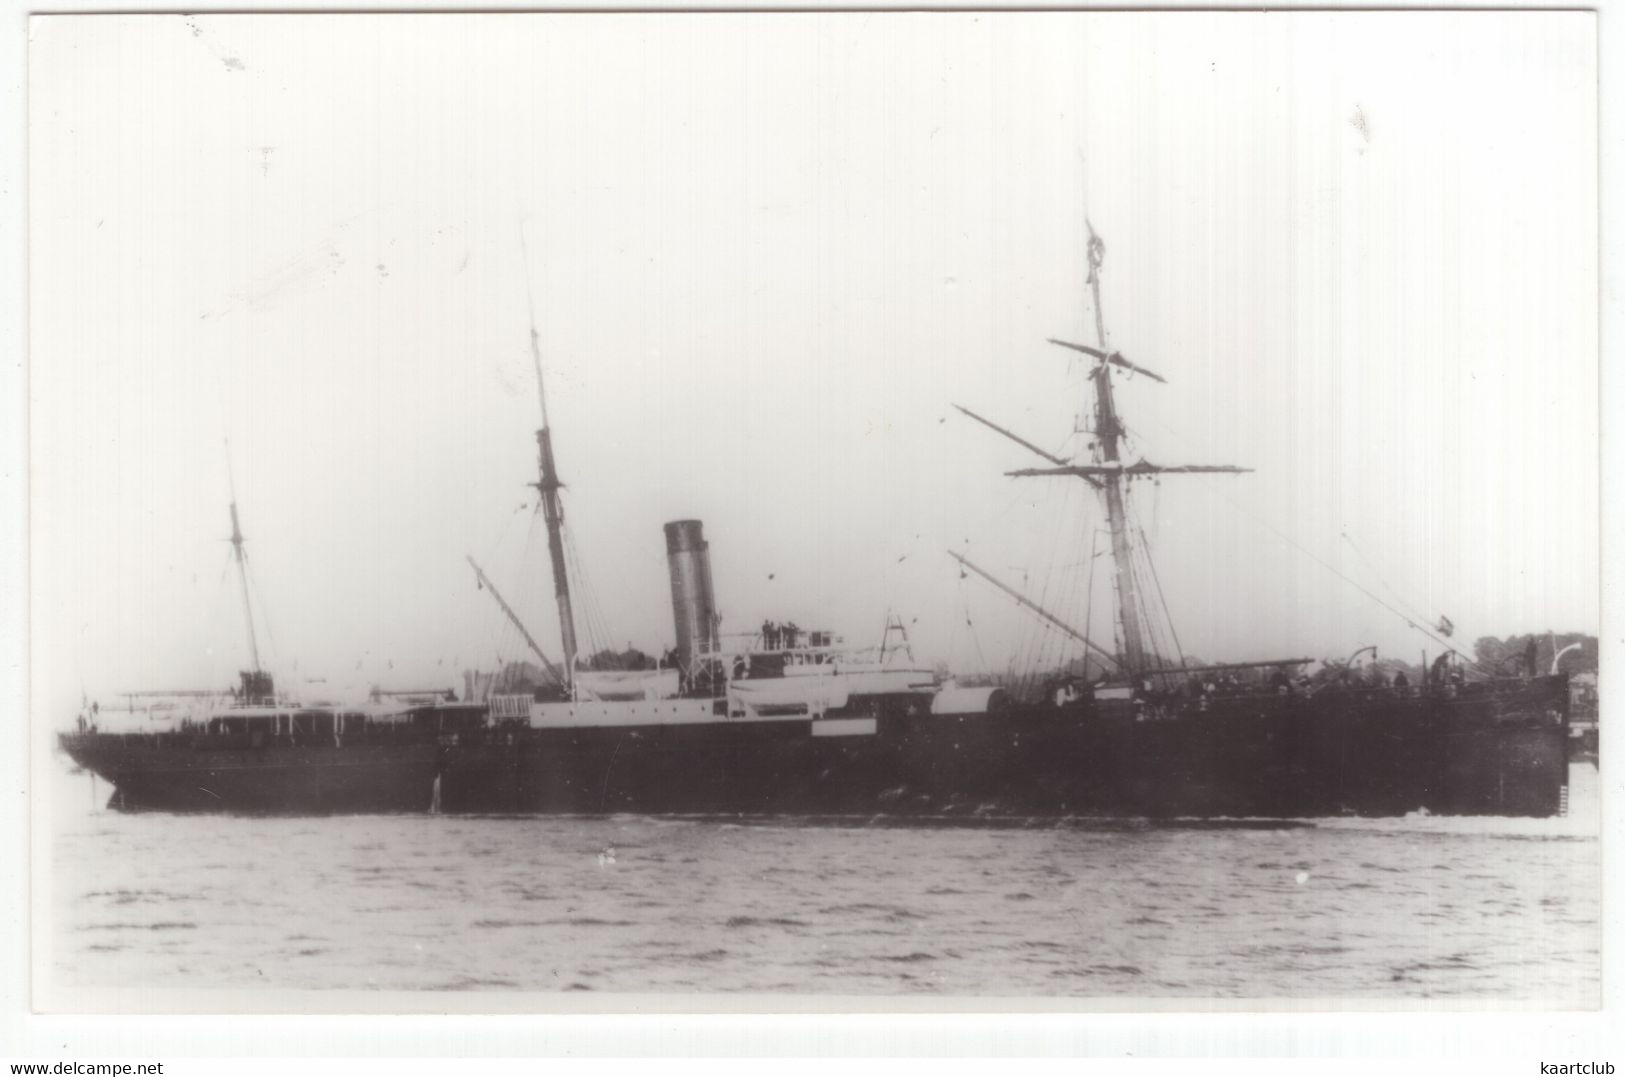 MS 'CONRAD' - 1872 - Passenger-/cargo Vessel - Steamer - Boats